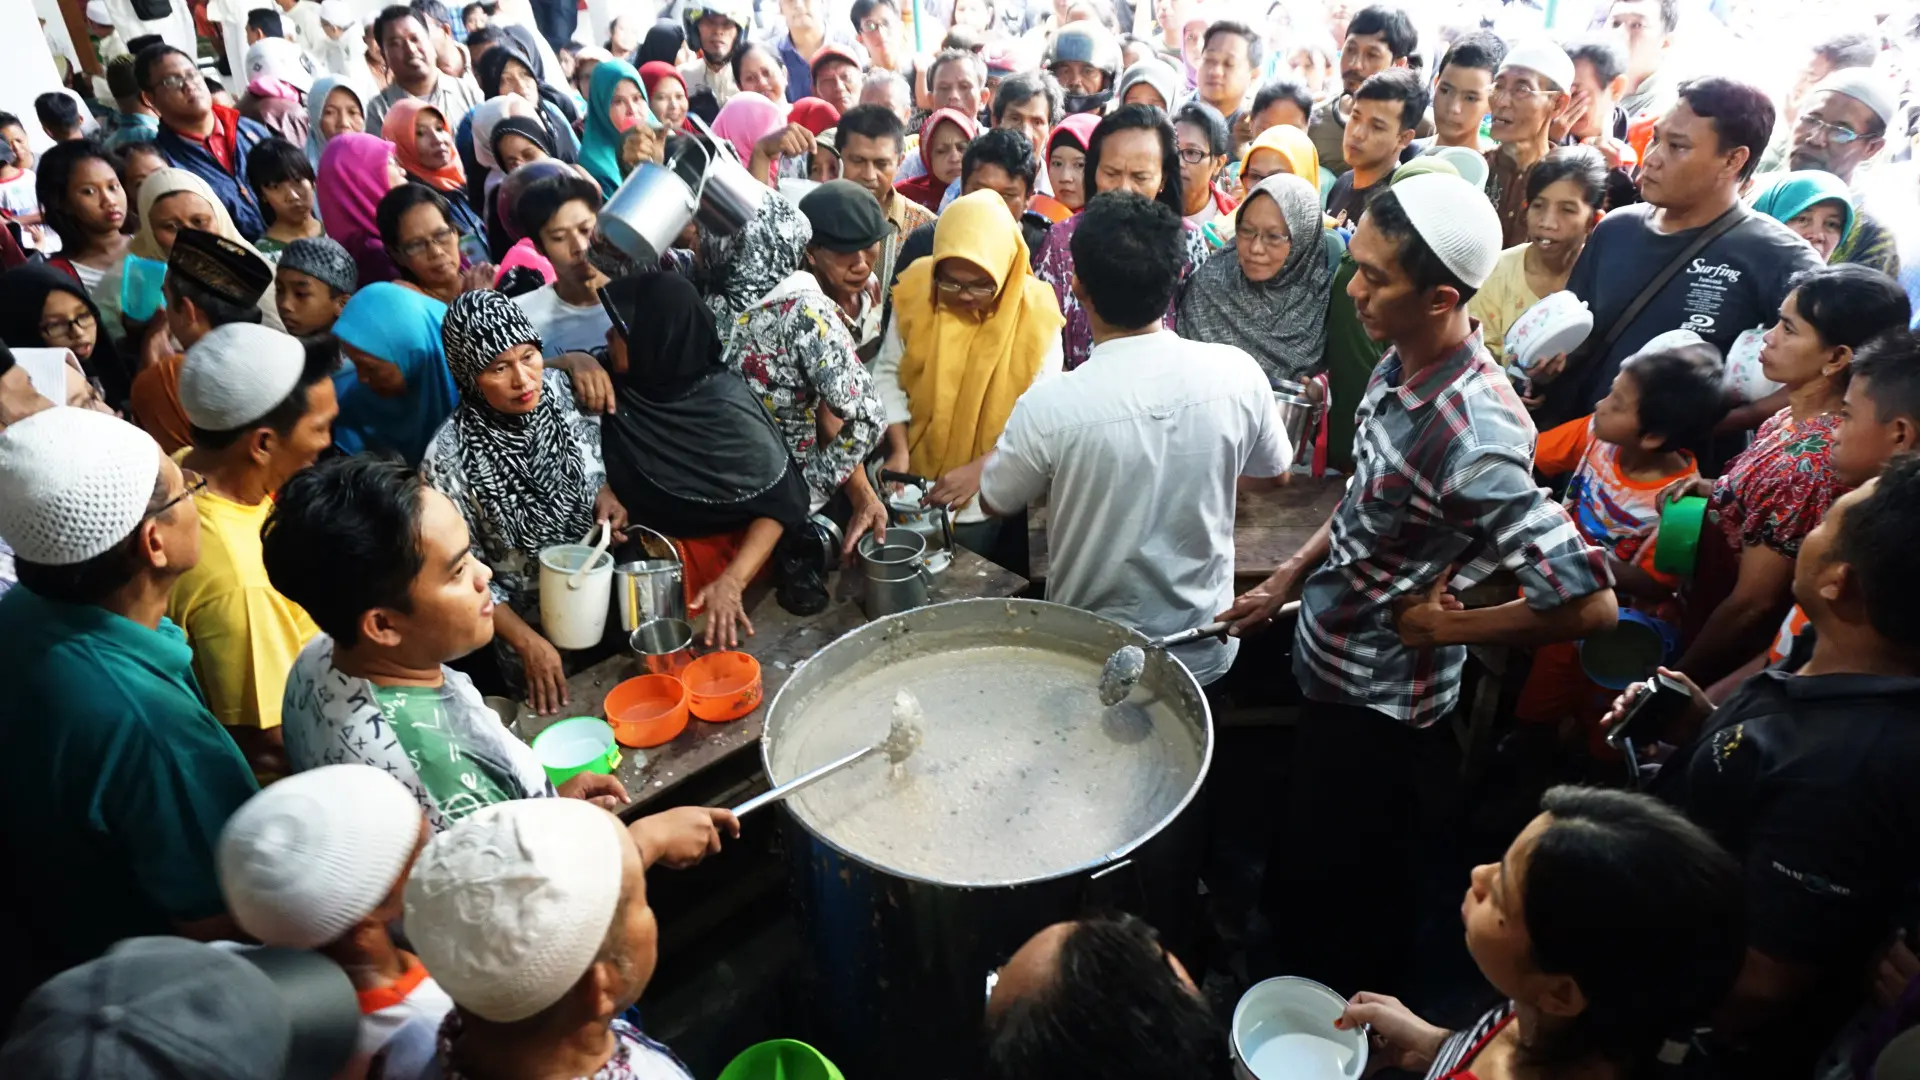 Bubur samin selalu menjadi hidangan istimewa untuk berbuka puasa di Masjid Darussalam di Jayengan, Serengan, Solo, Jawa Tengah. ‎(Liputan6.com/Fajar Abrori)